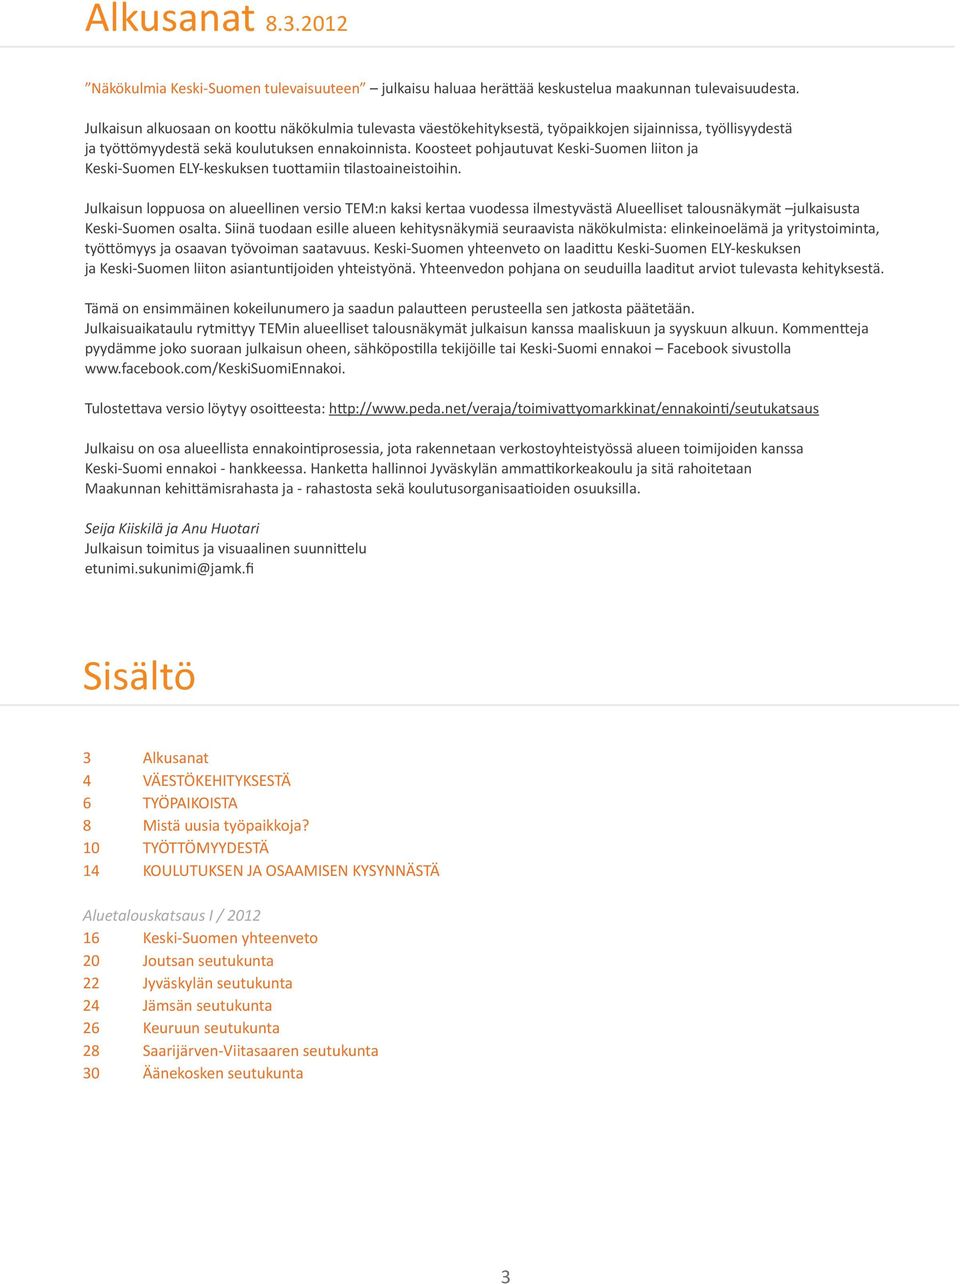 Koosteet pohjautuvat Keski-Suomen liiton ja Keski-Suomen ELY-keskuksen tuottamiin tilastoaineistoihin.